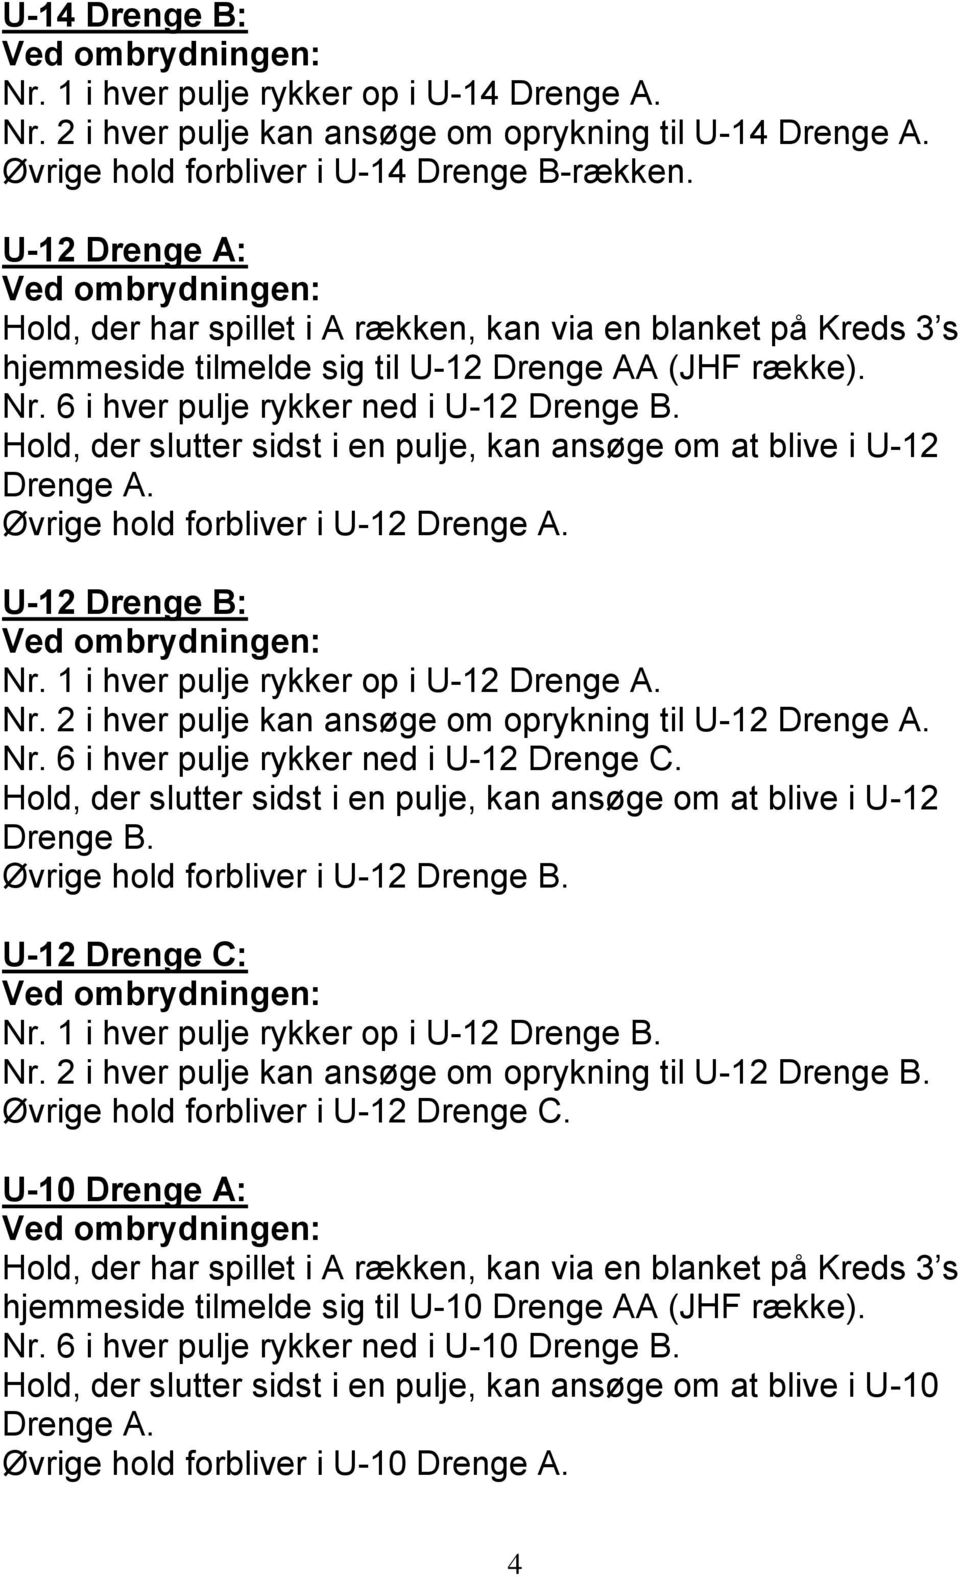 Øvrige hold forbliver i U-12 Drenge A. U-12 Drenge B: Nr. 1 i hver pulje rykker op i U-12 Drenge A. Nr. 2 i hver pulje kan ansøge om oprykning til U-12 Drenge A. Nr. 6 i hver pulje rykker ned i U-12 Drenge C.